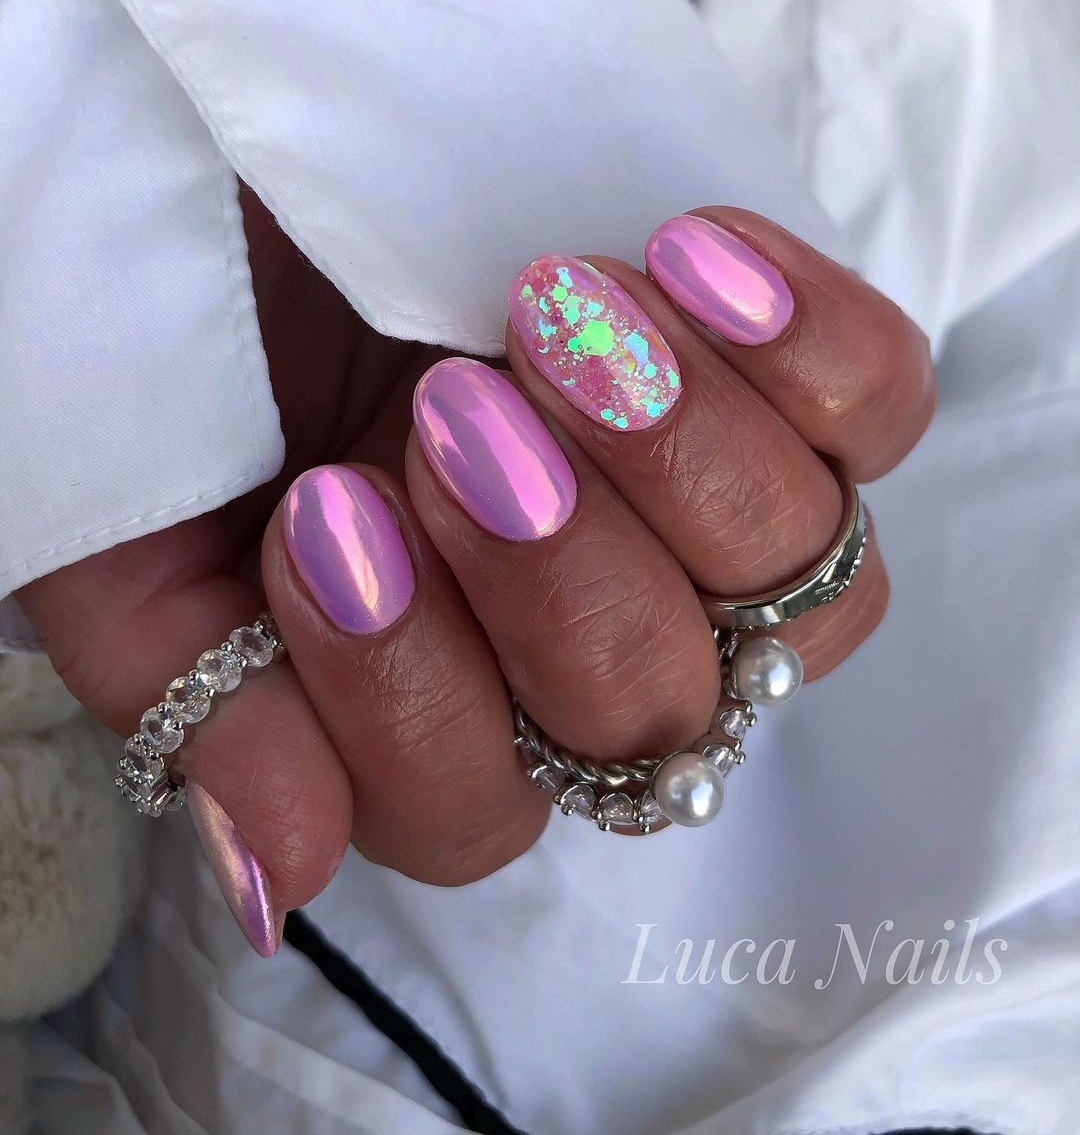 Korte roze chromen nagels met glitters